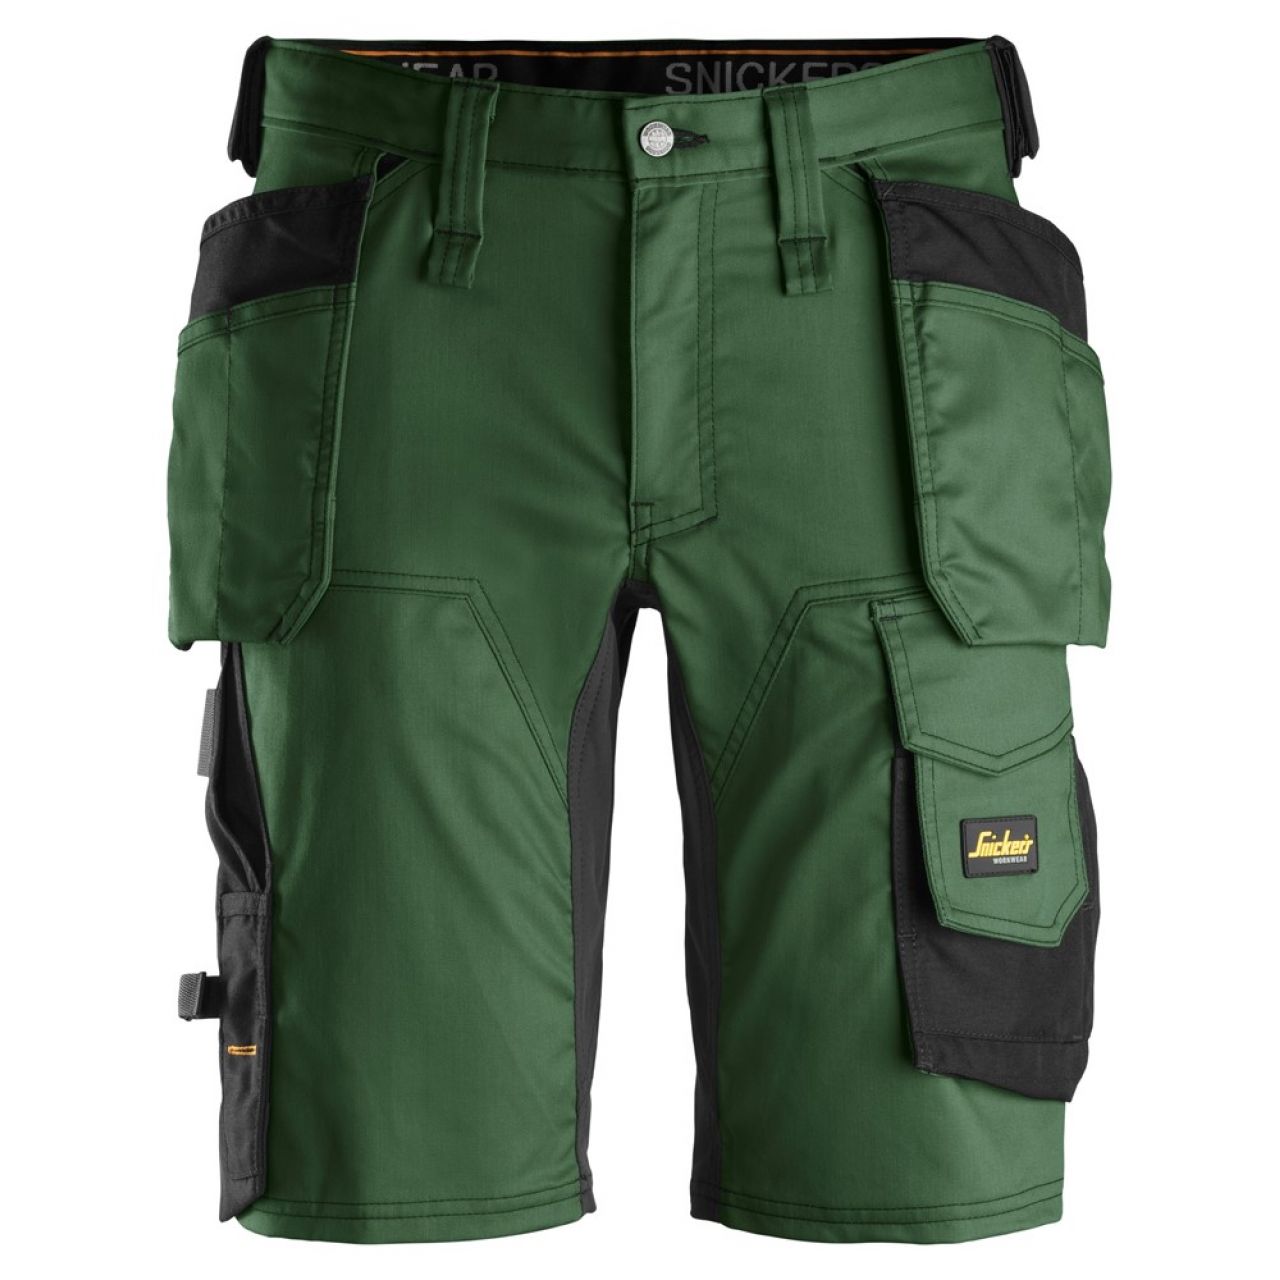 6141 Pantalones cortos de trabajo elásticos con bolsillos flotantes AllroundWork verde forestal-negro talla 48